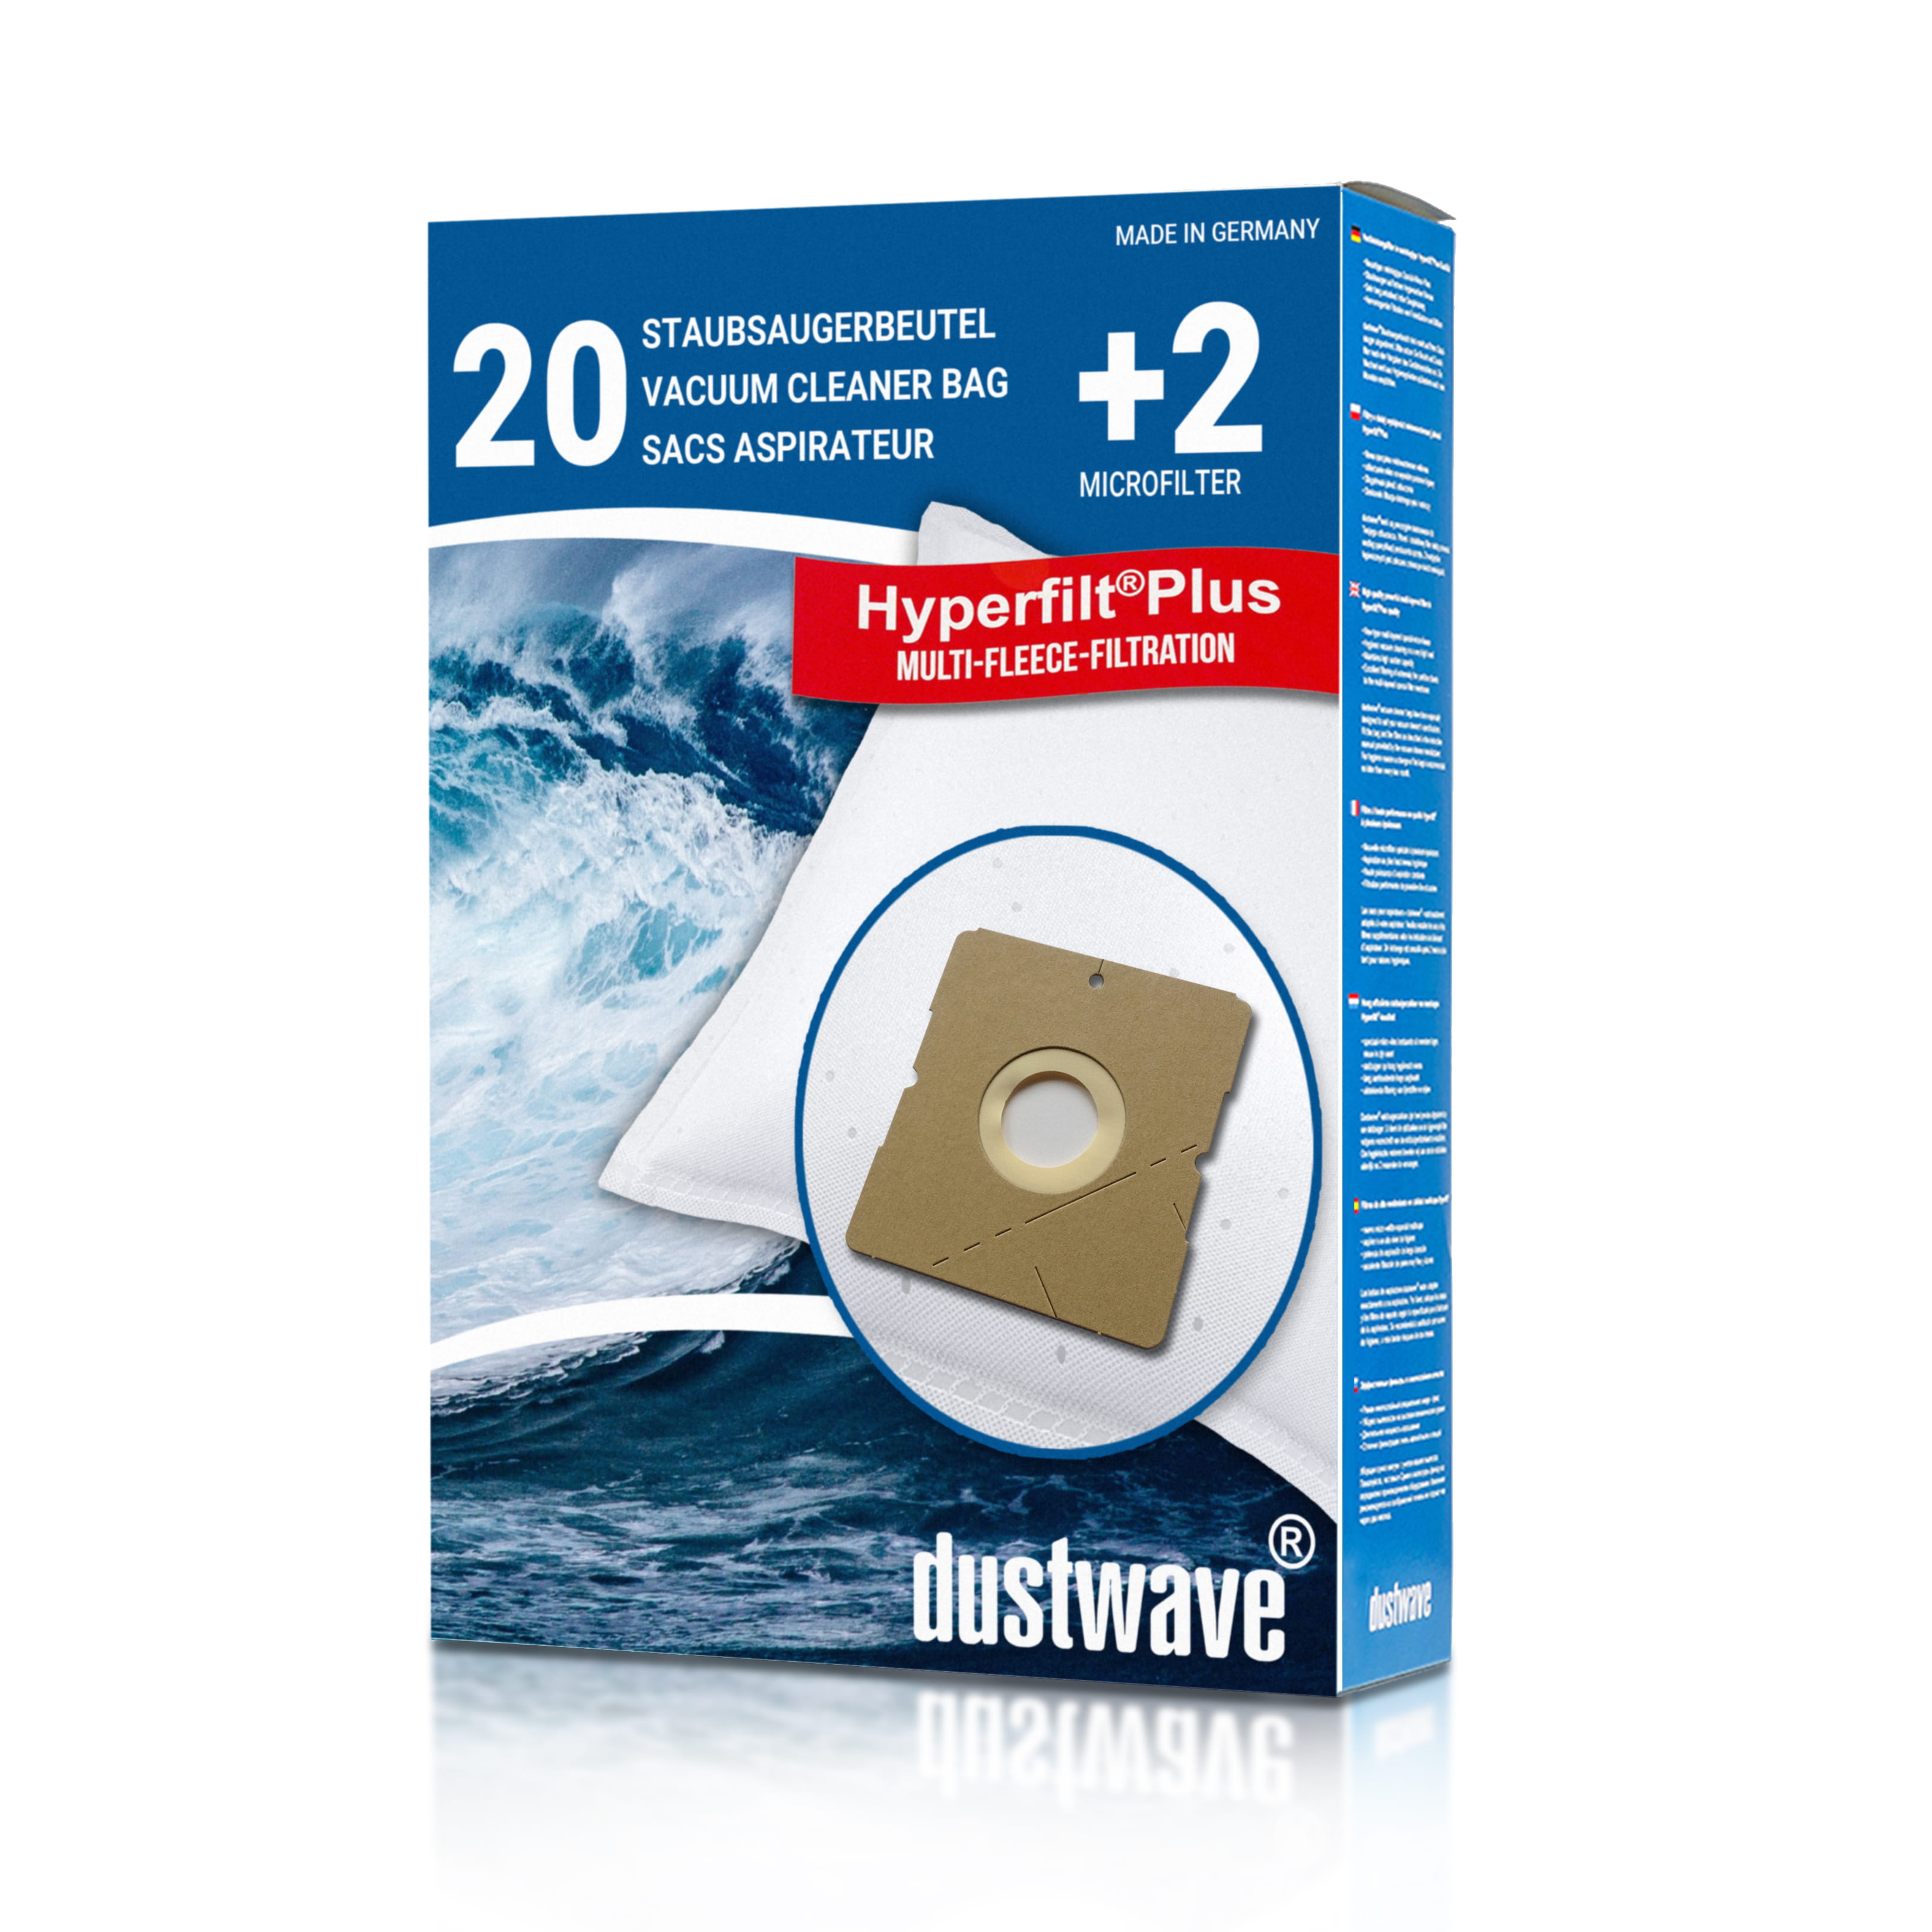 Dustwave® 20 Staubsaugerbeutel für Hoover TDC1600 001 - hocheffizient, mehrlagiges Mikrovlies mit Hygieneverschluss - Made in Germany